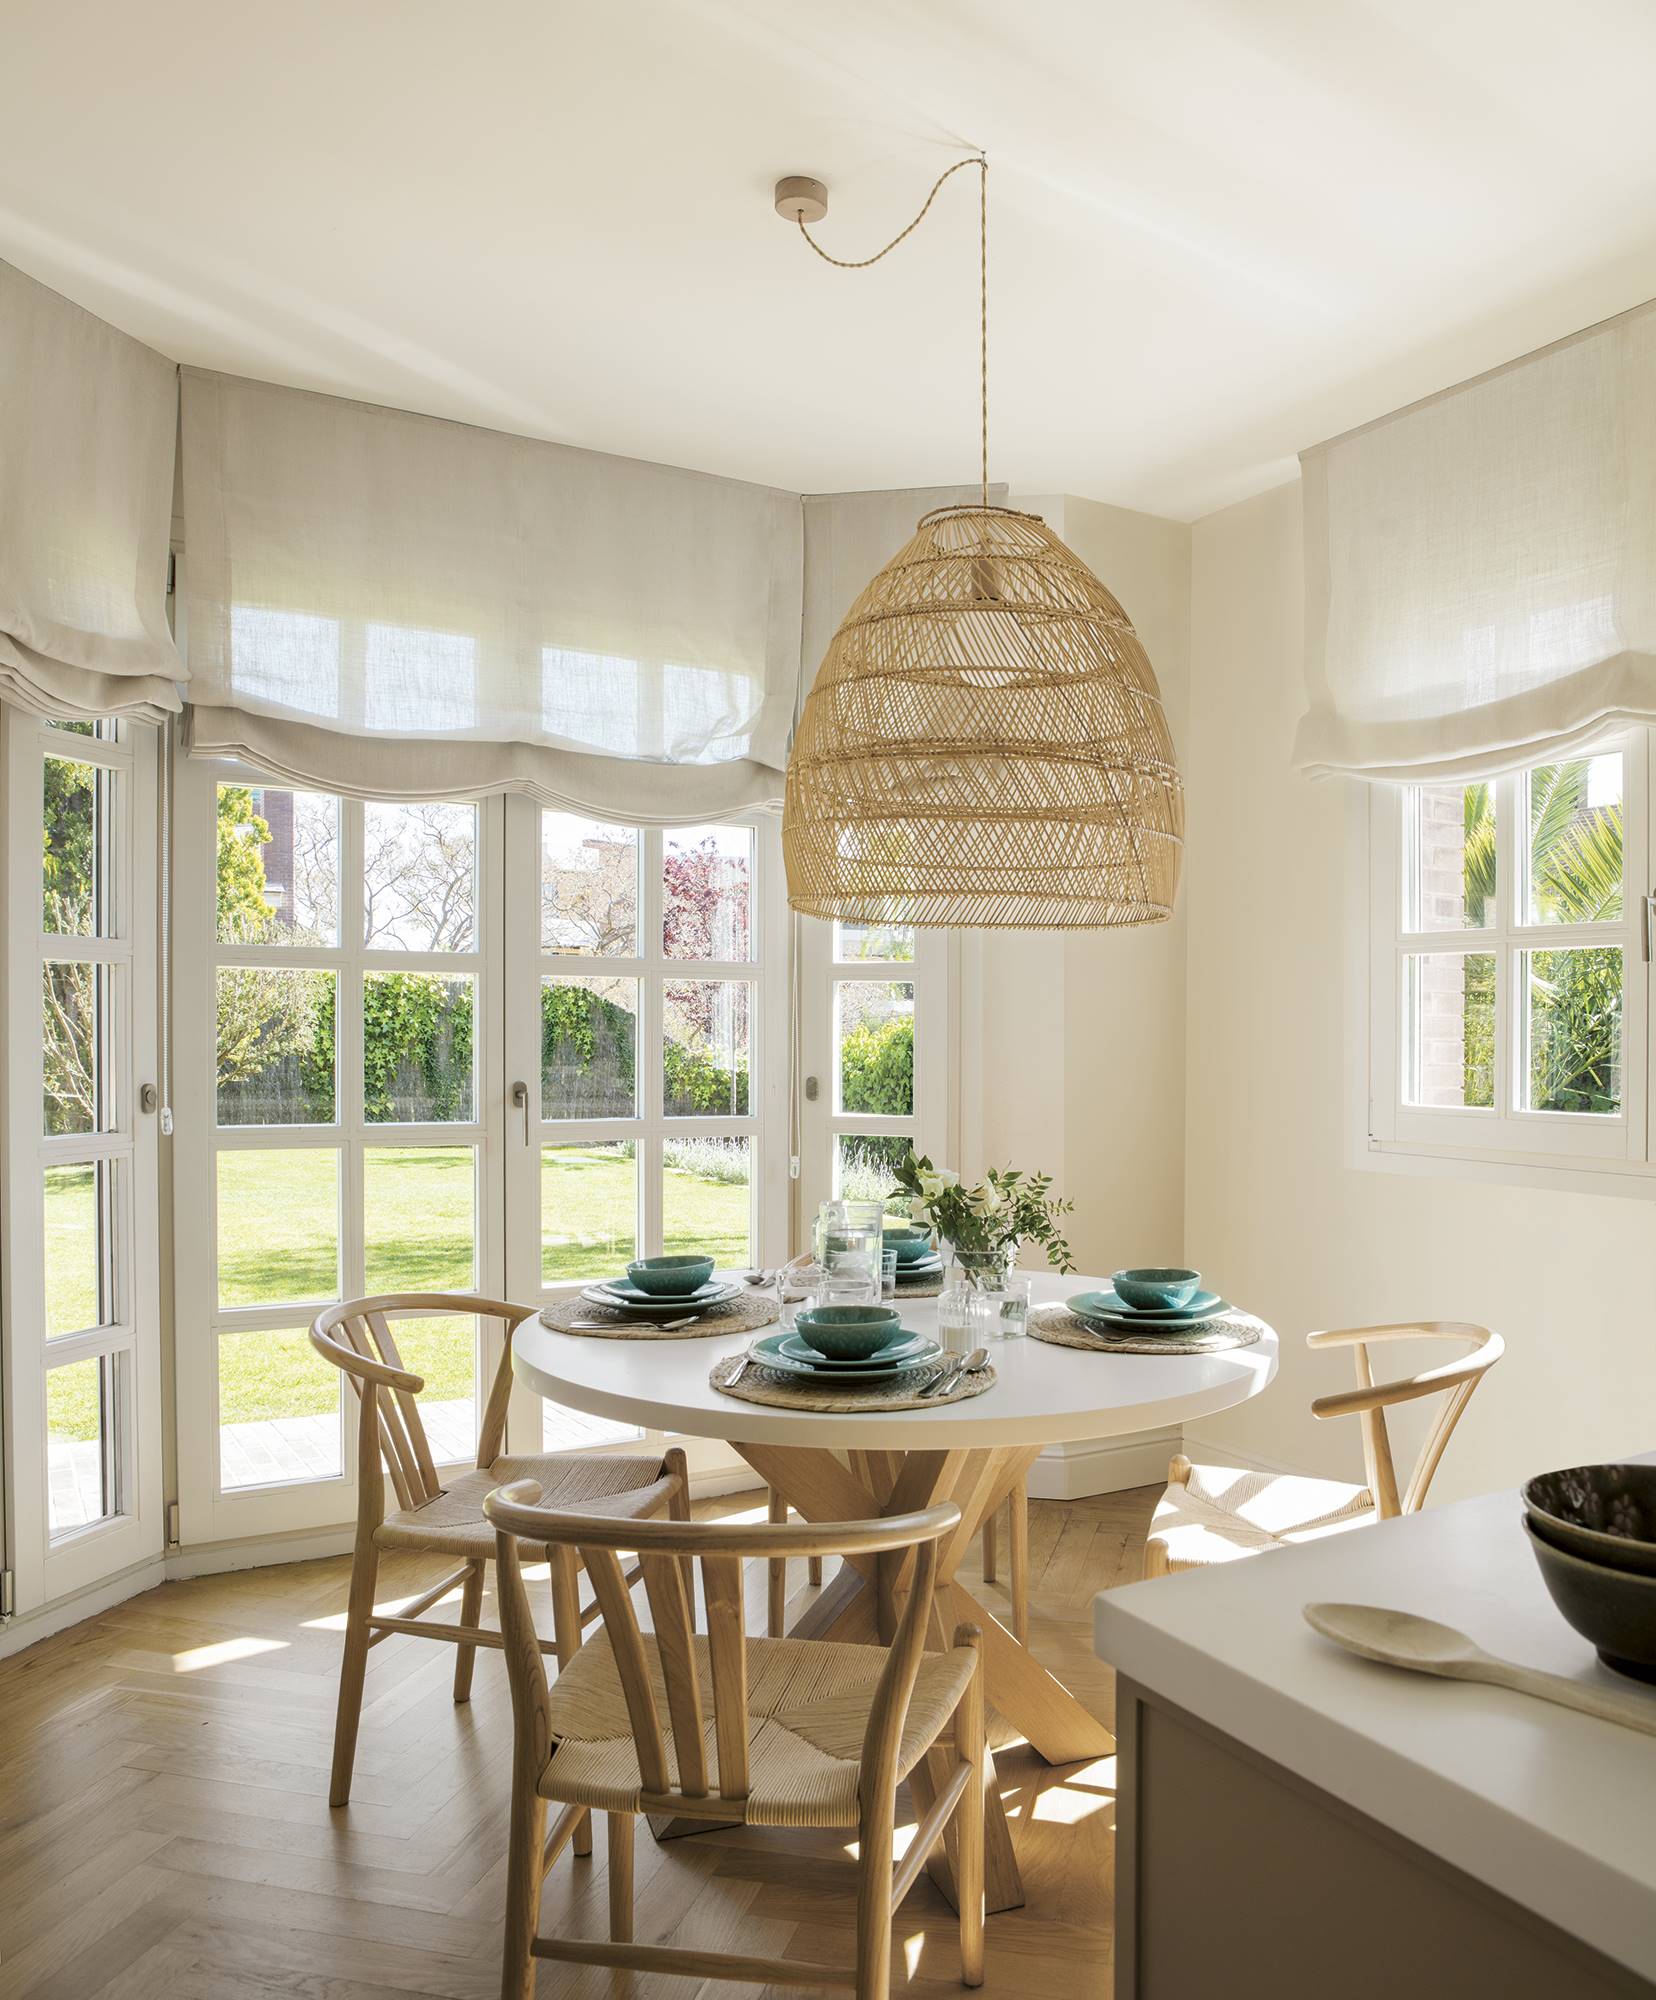 Office luminoso con mesa redonda y puertas acristaladas con cuarterones que comunican con el jardín.